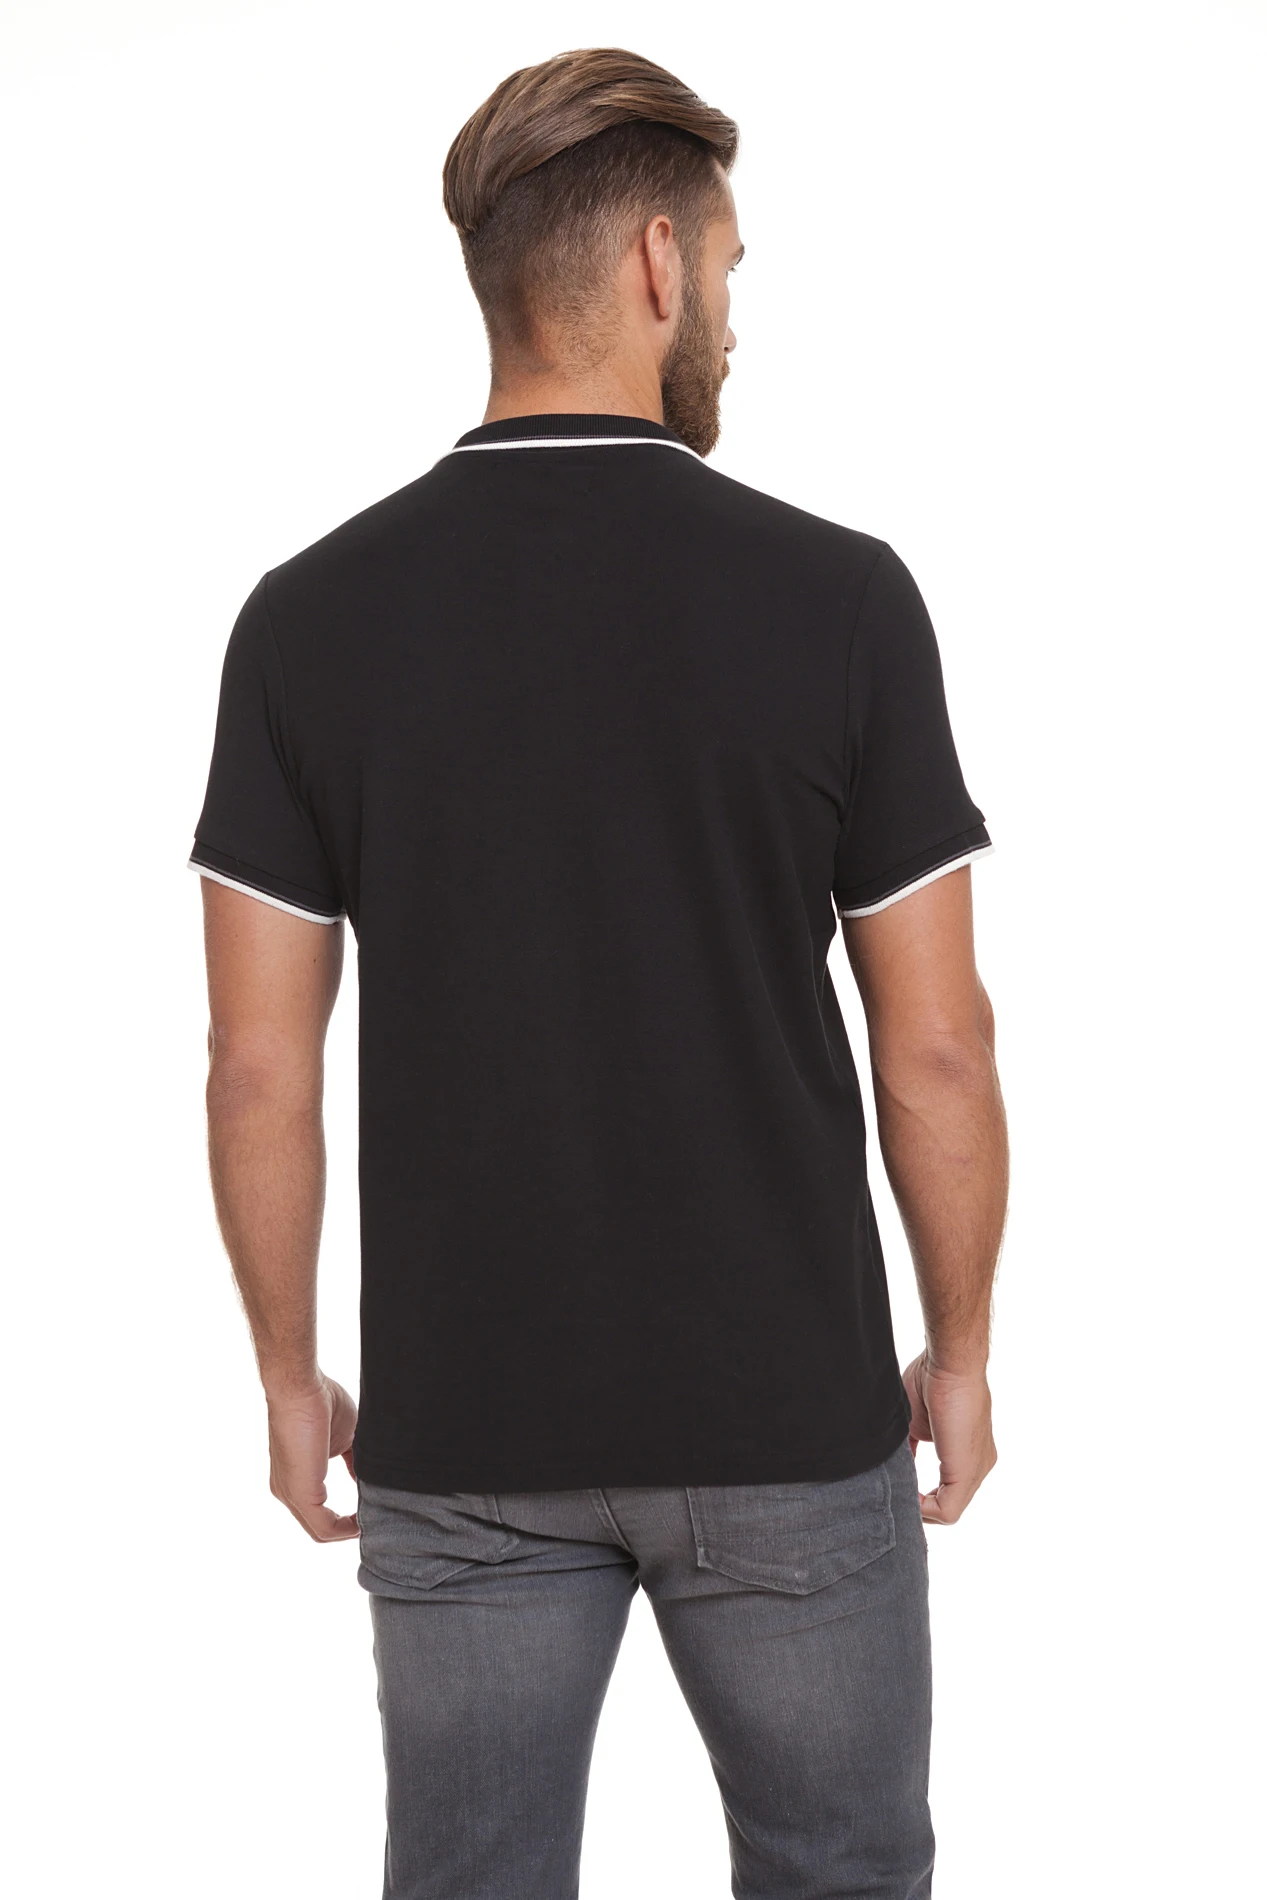 Мужская Повседневная футболка-поло Crosshatch черная хлопковая футболка с коротким